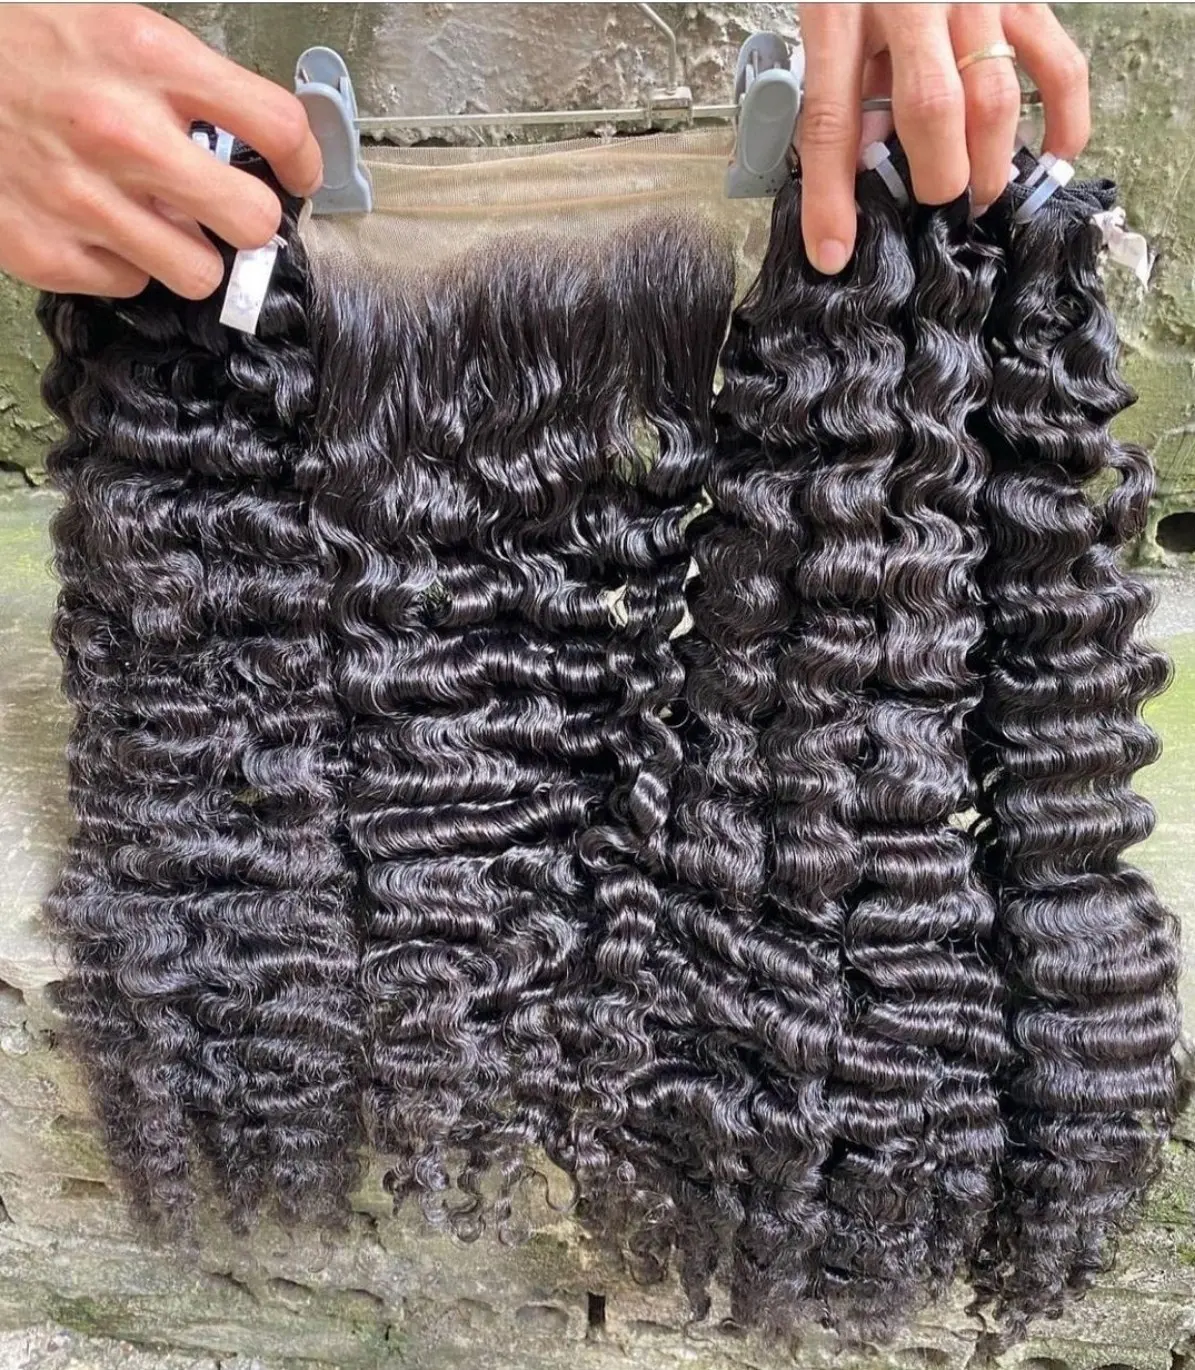 Cabello humano rizado birmano crudo superventas, cutícula real rizada birmana al por mayor se adapta a extensiones de cabello humano natural de 8-30 pulgadas